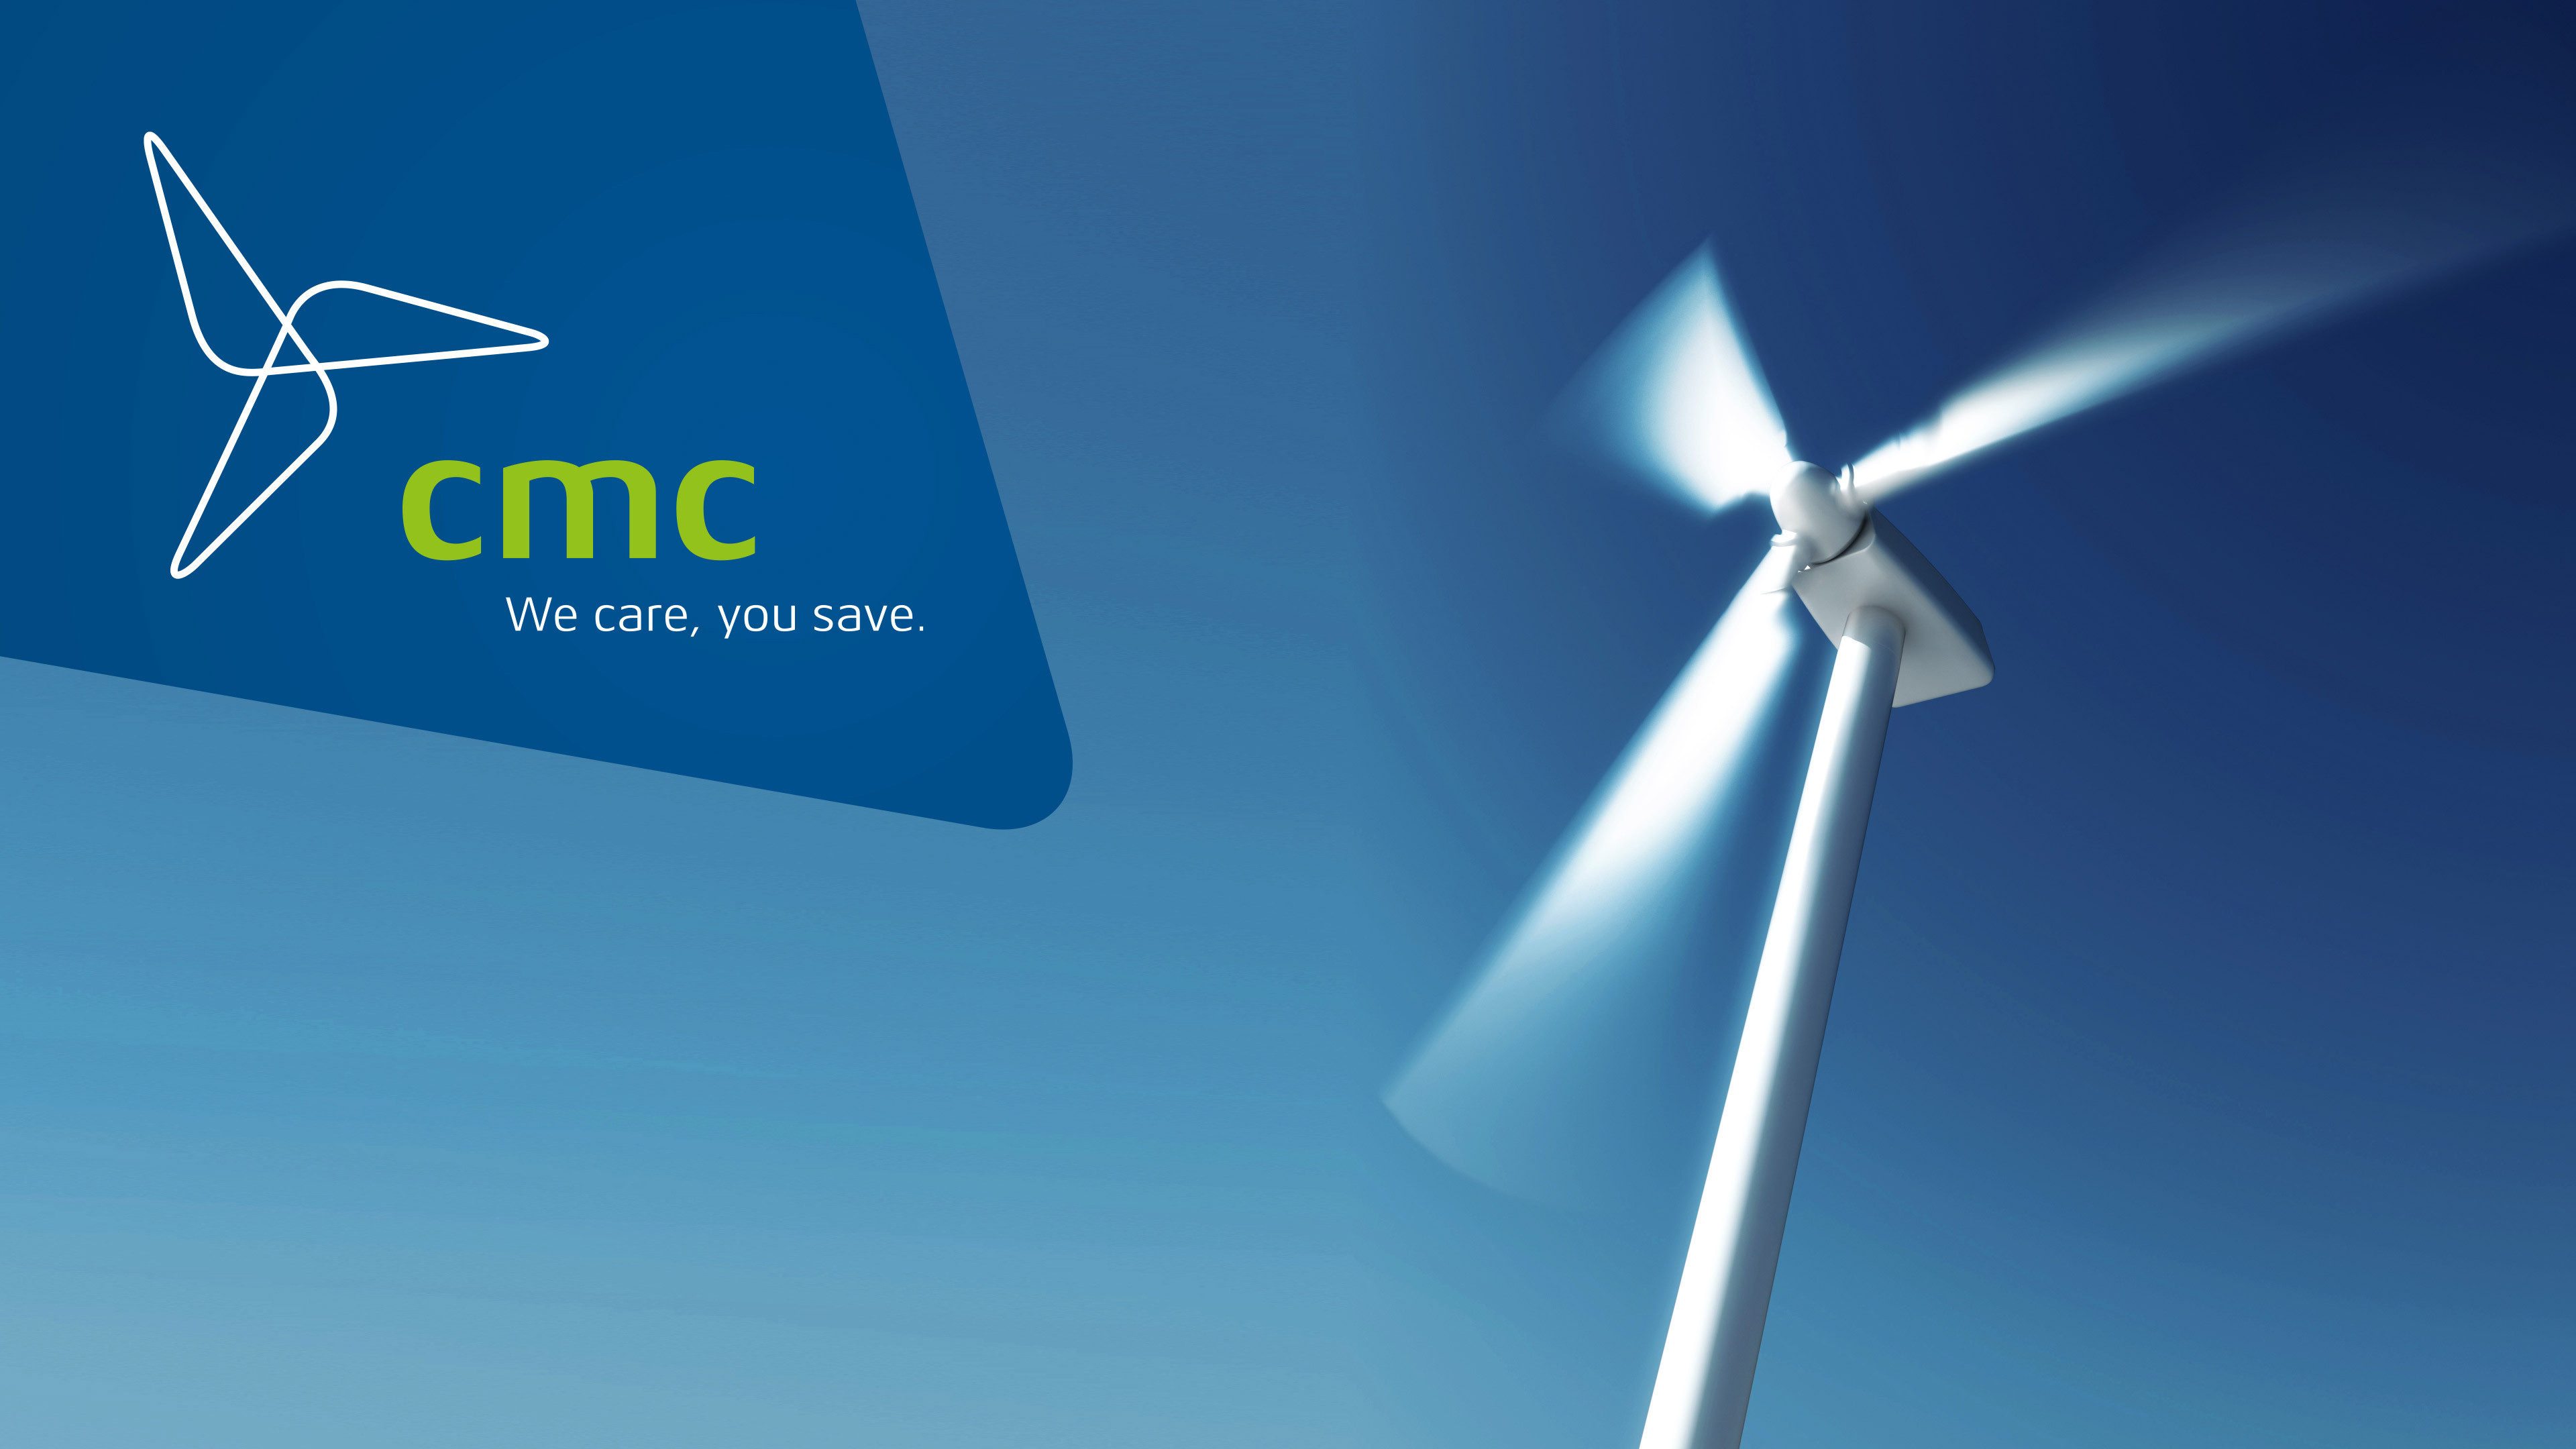 Drehende Windkraftanlage auf blauem Hintergrund mit cmc-Logo